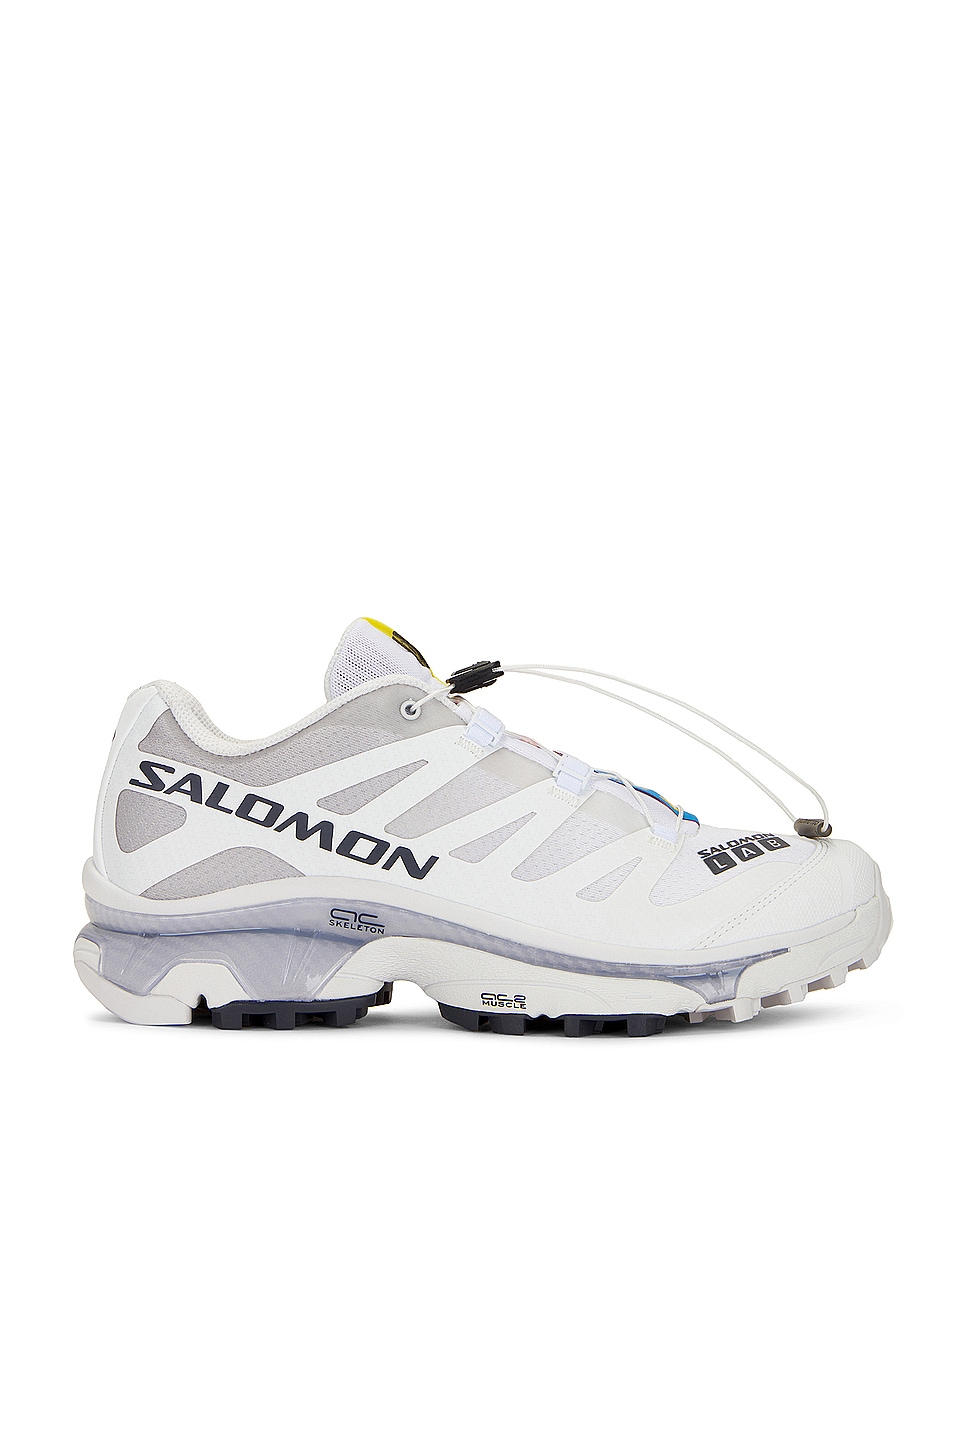 Image 1 of Salomon XT-4 OG Sneaker in White, Ebony, & Lunar Rock